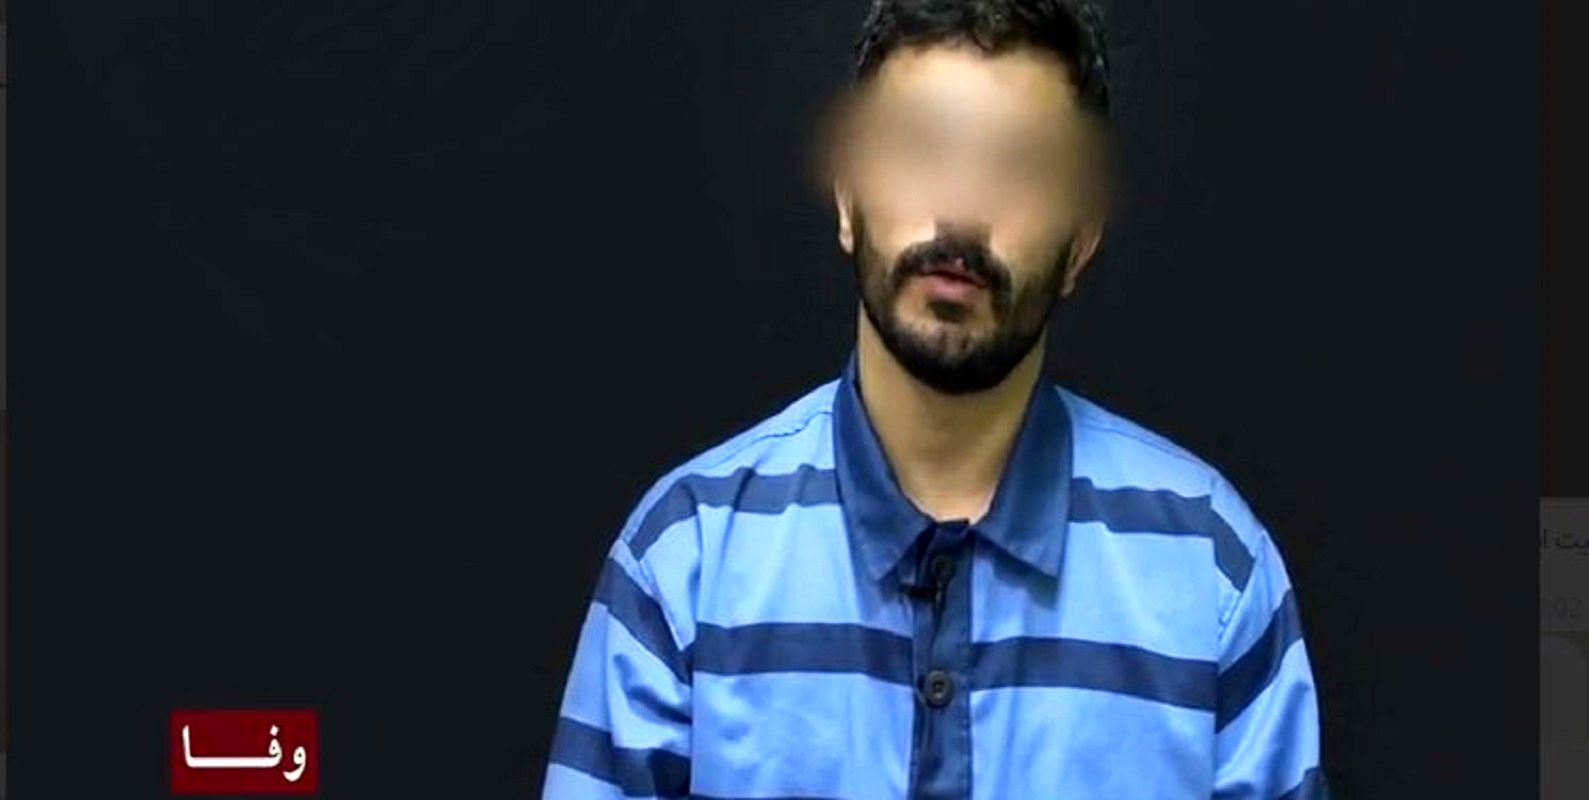   جزئیاتی از اعدام 4 نفر از اعضای شبکه موساد+ فیلم تعقیب و گریز 